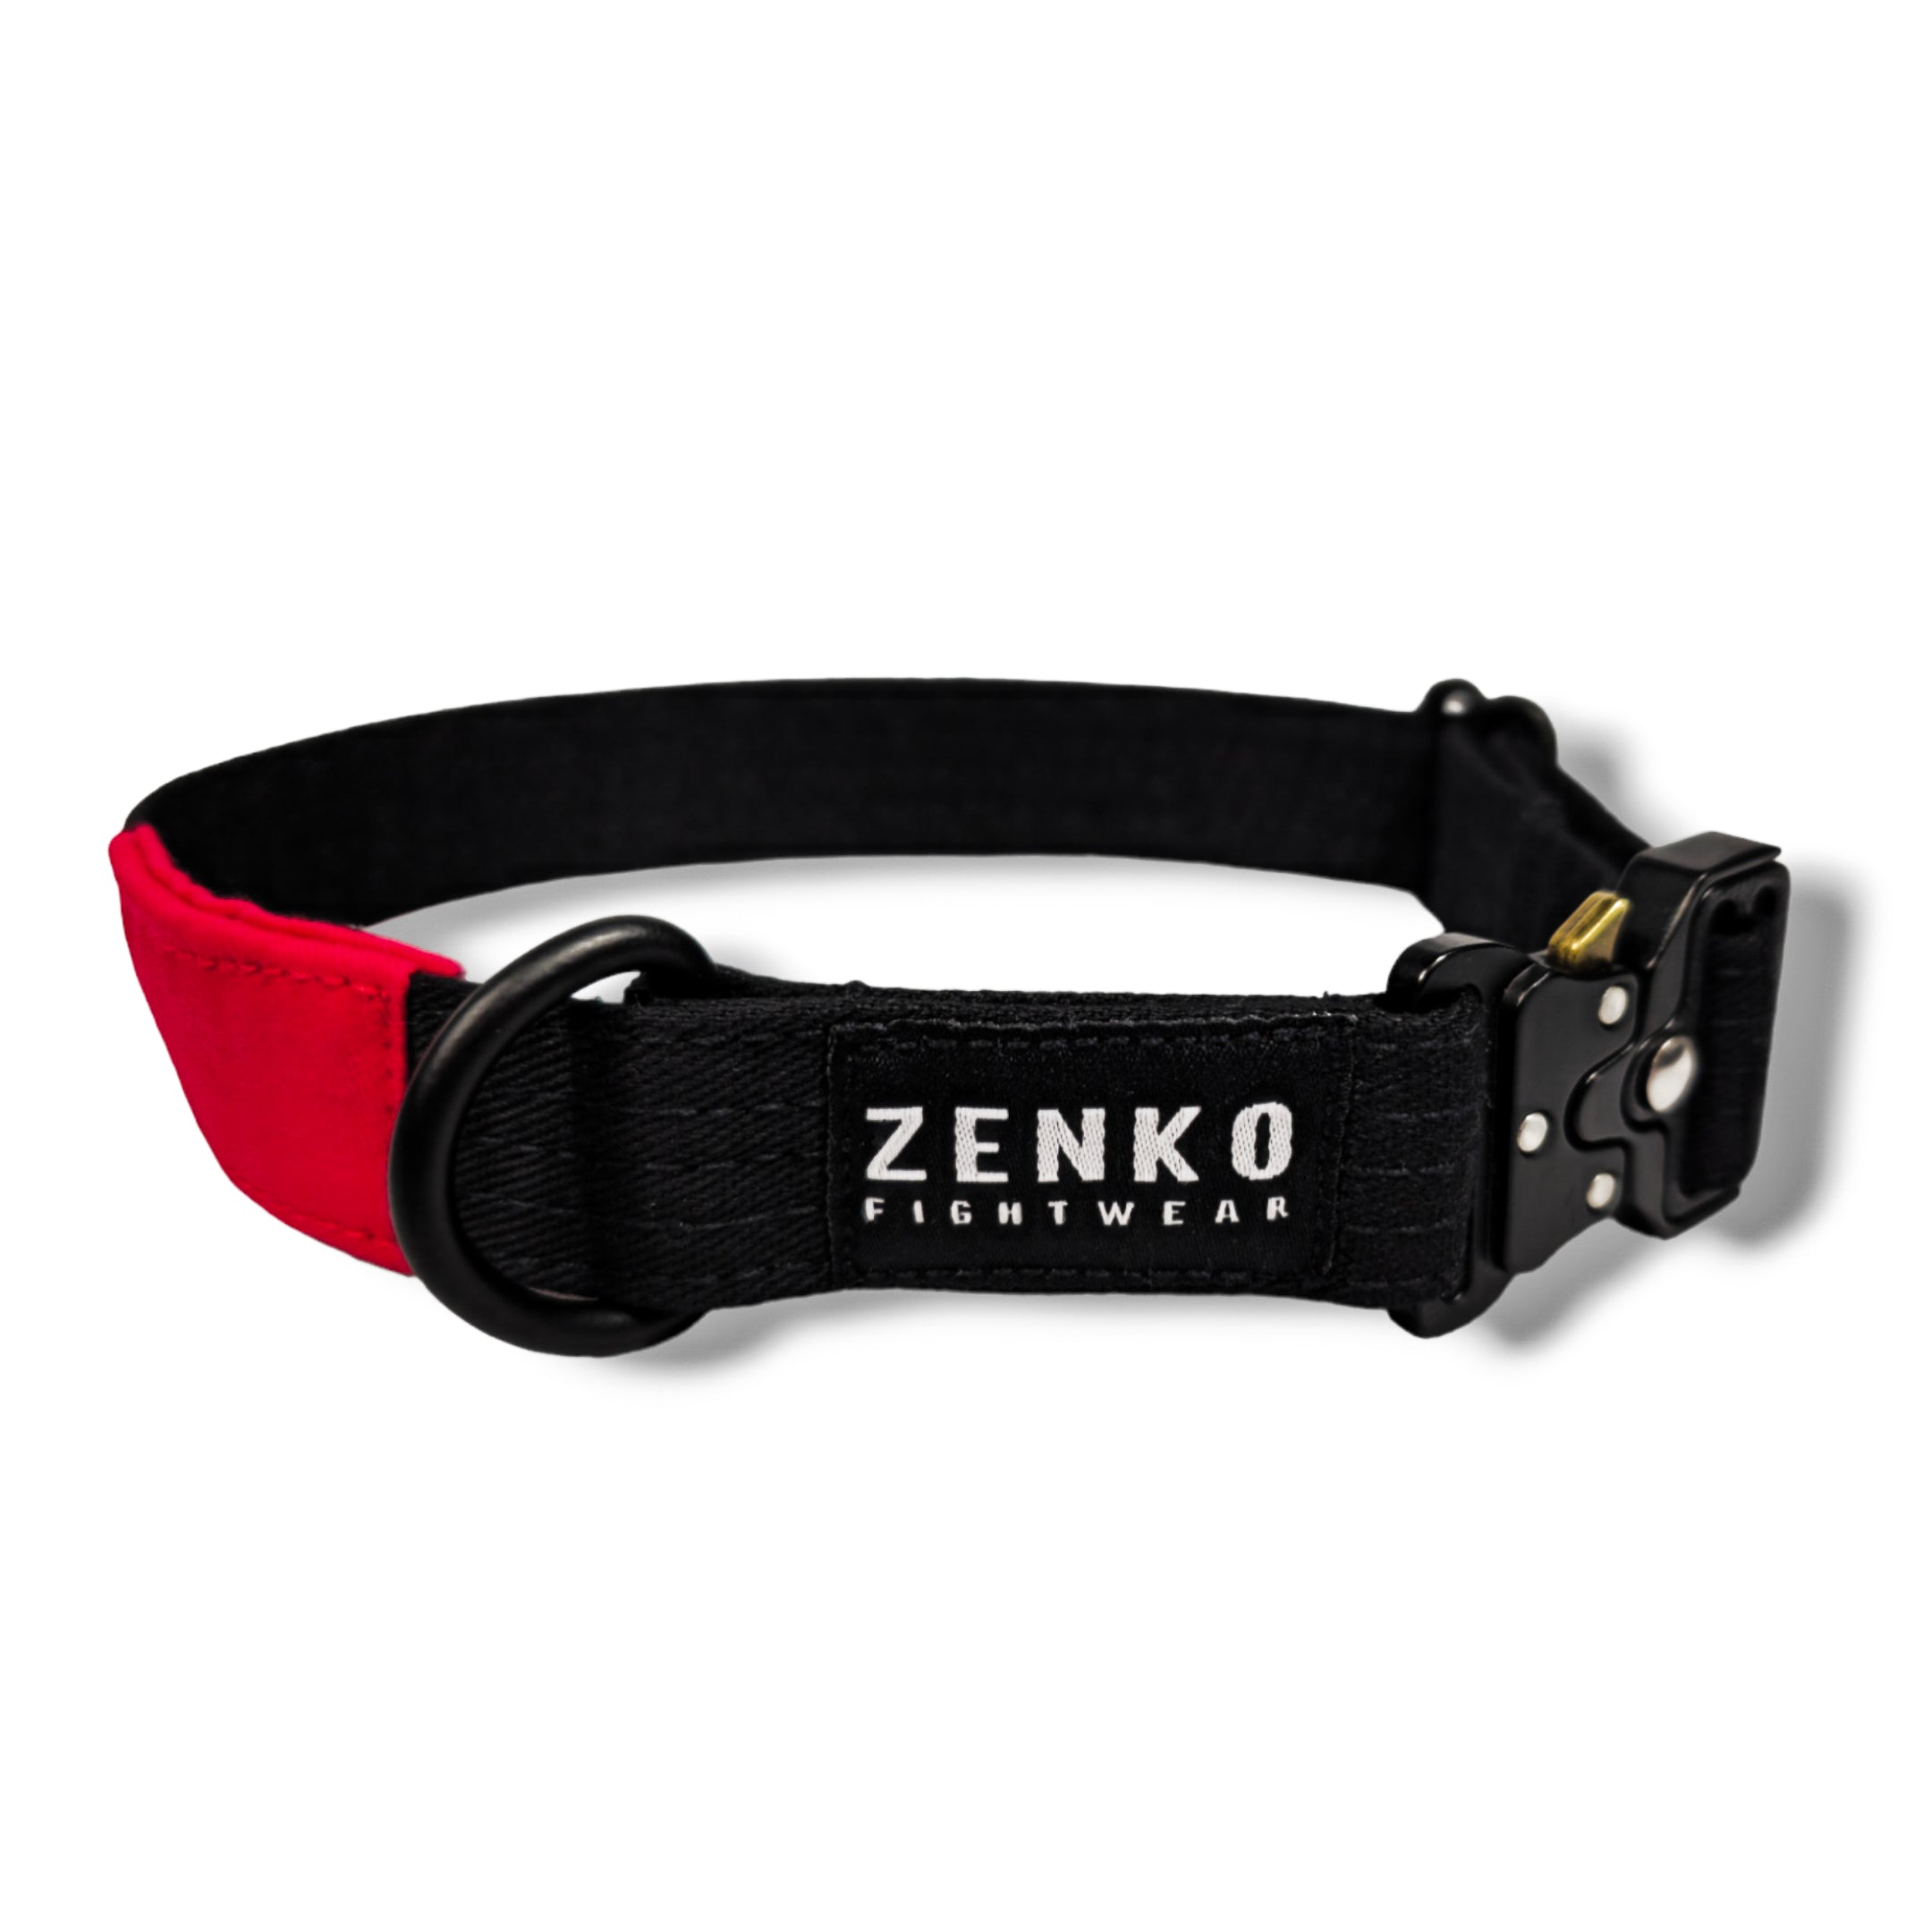 Zenko Fightwear Jiu Jitsu BJJ Belt Dog Collar